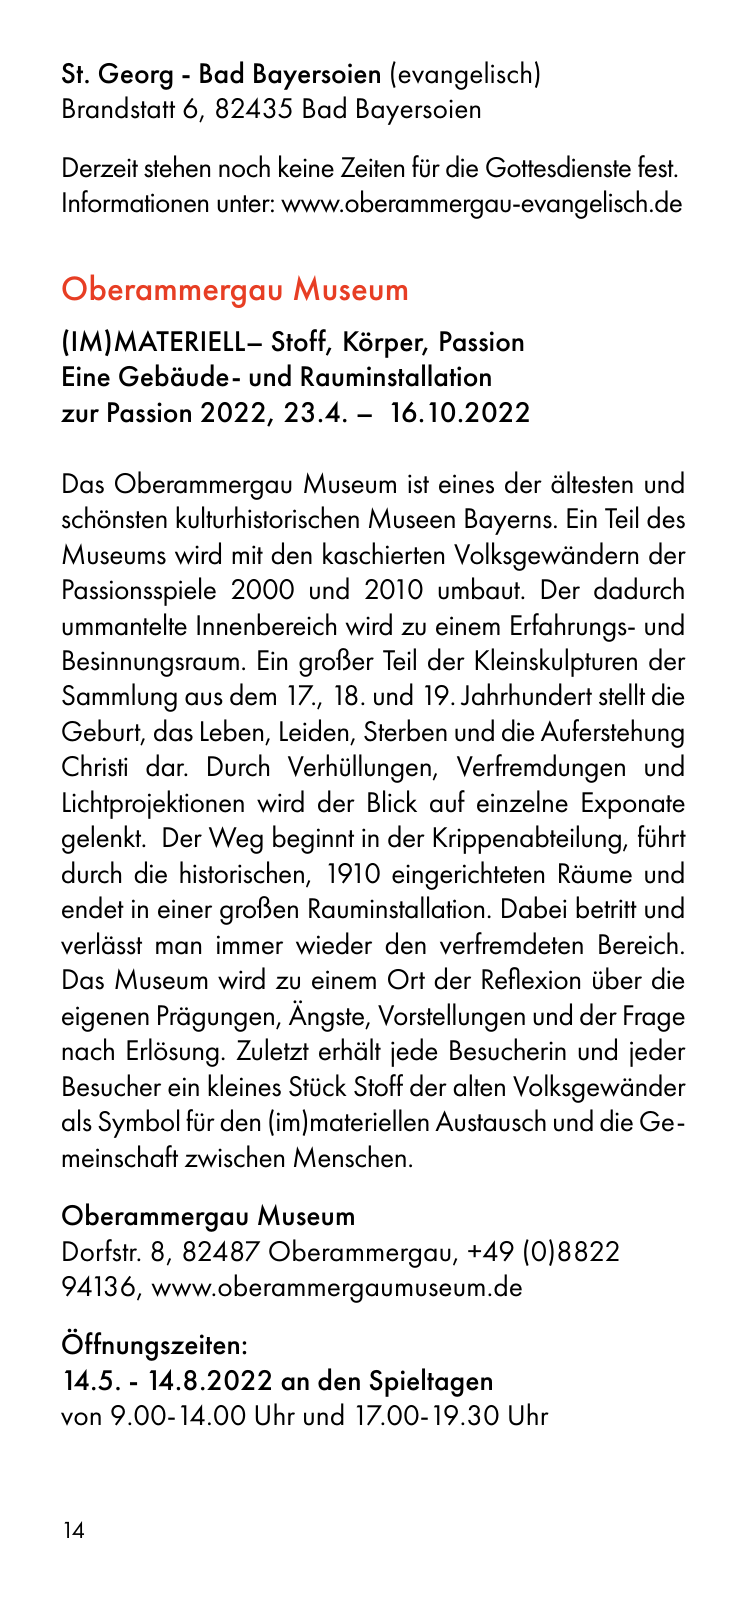 Vorschau Besucherinformation - Ticket only 24.08. Seite 14